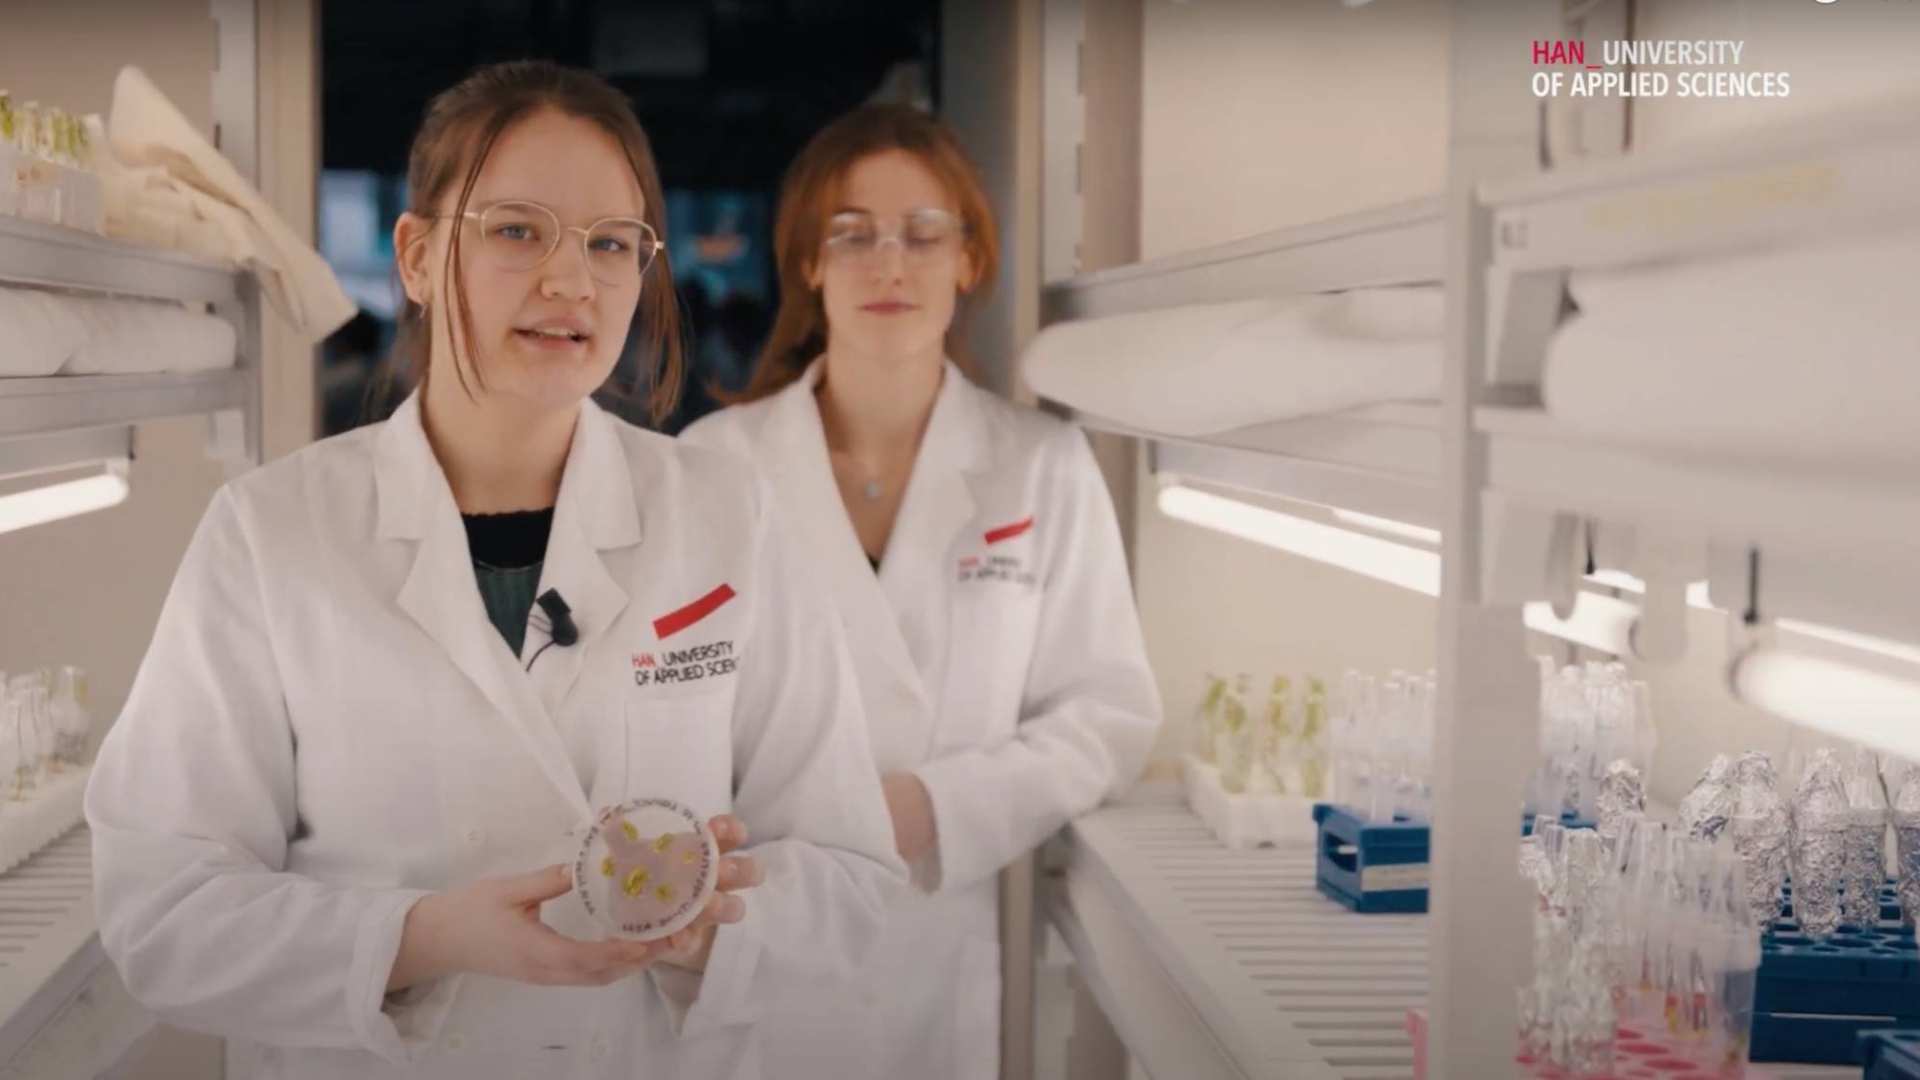 Een shot uit de video van de opleiding Life Sciences van Academie Toegepaste Biowetenschappen en Chemie uit april 2022